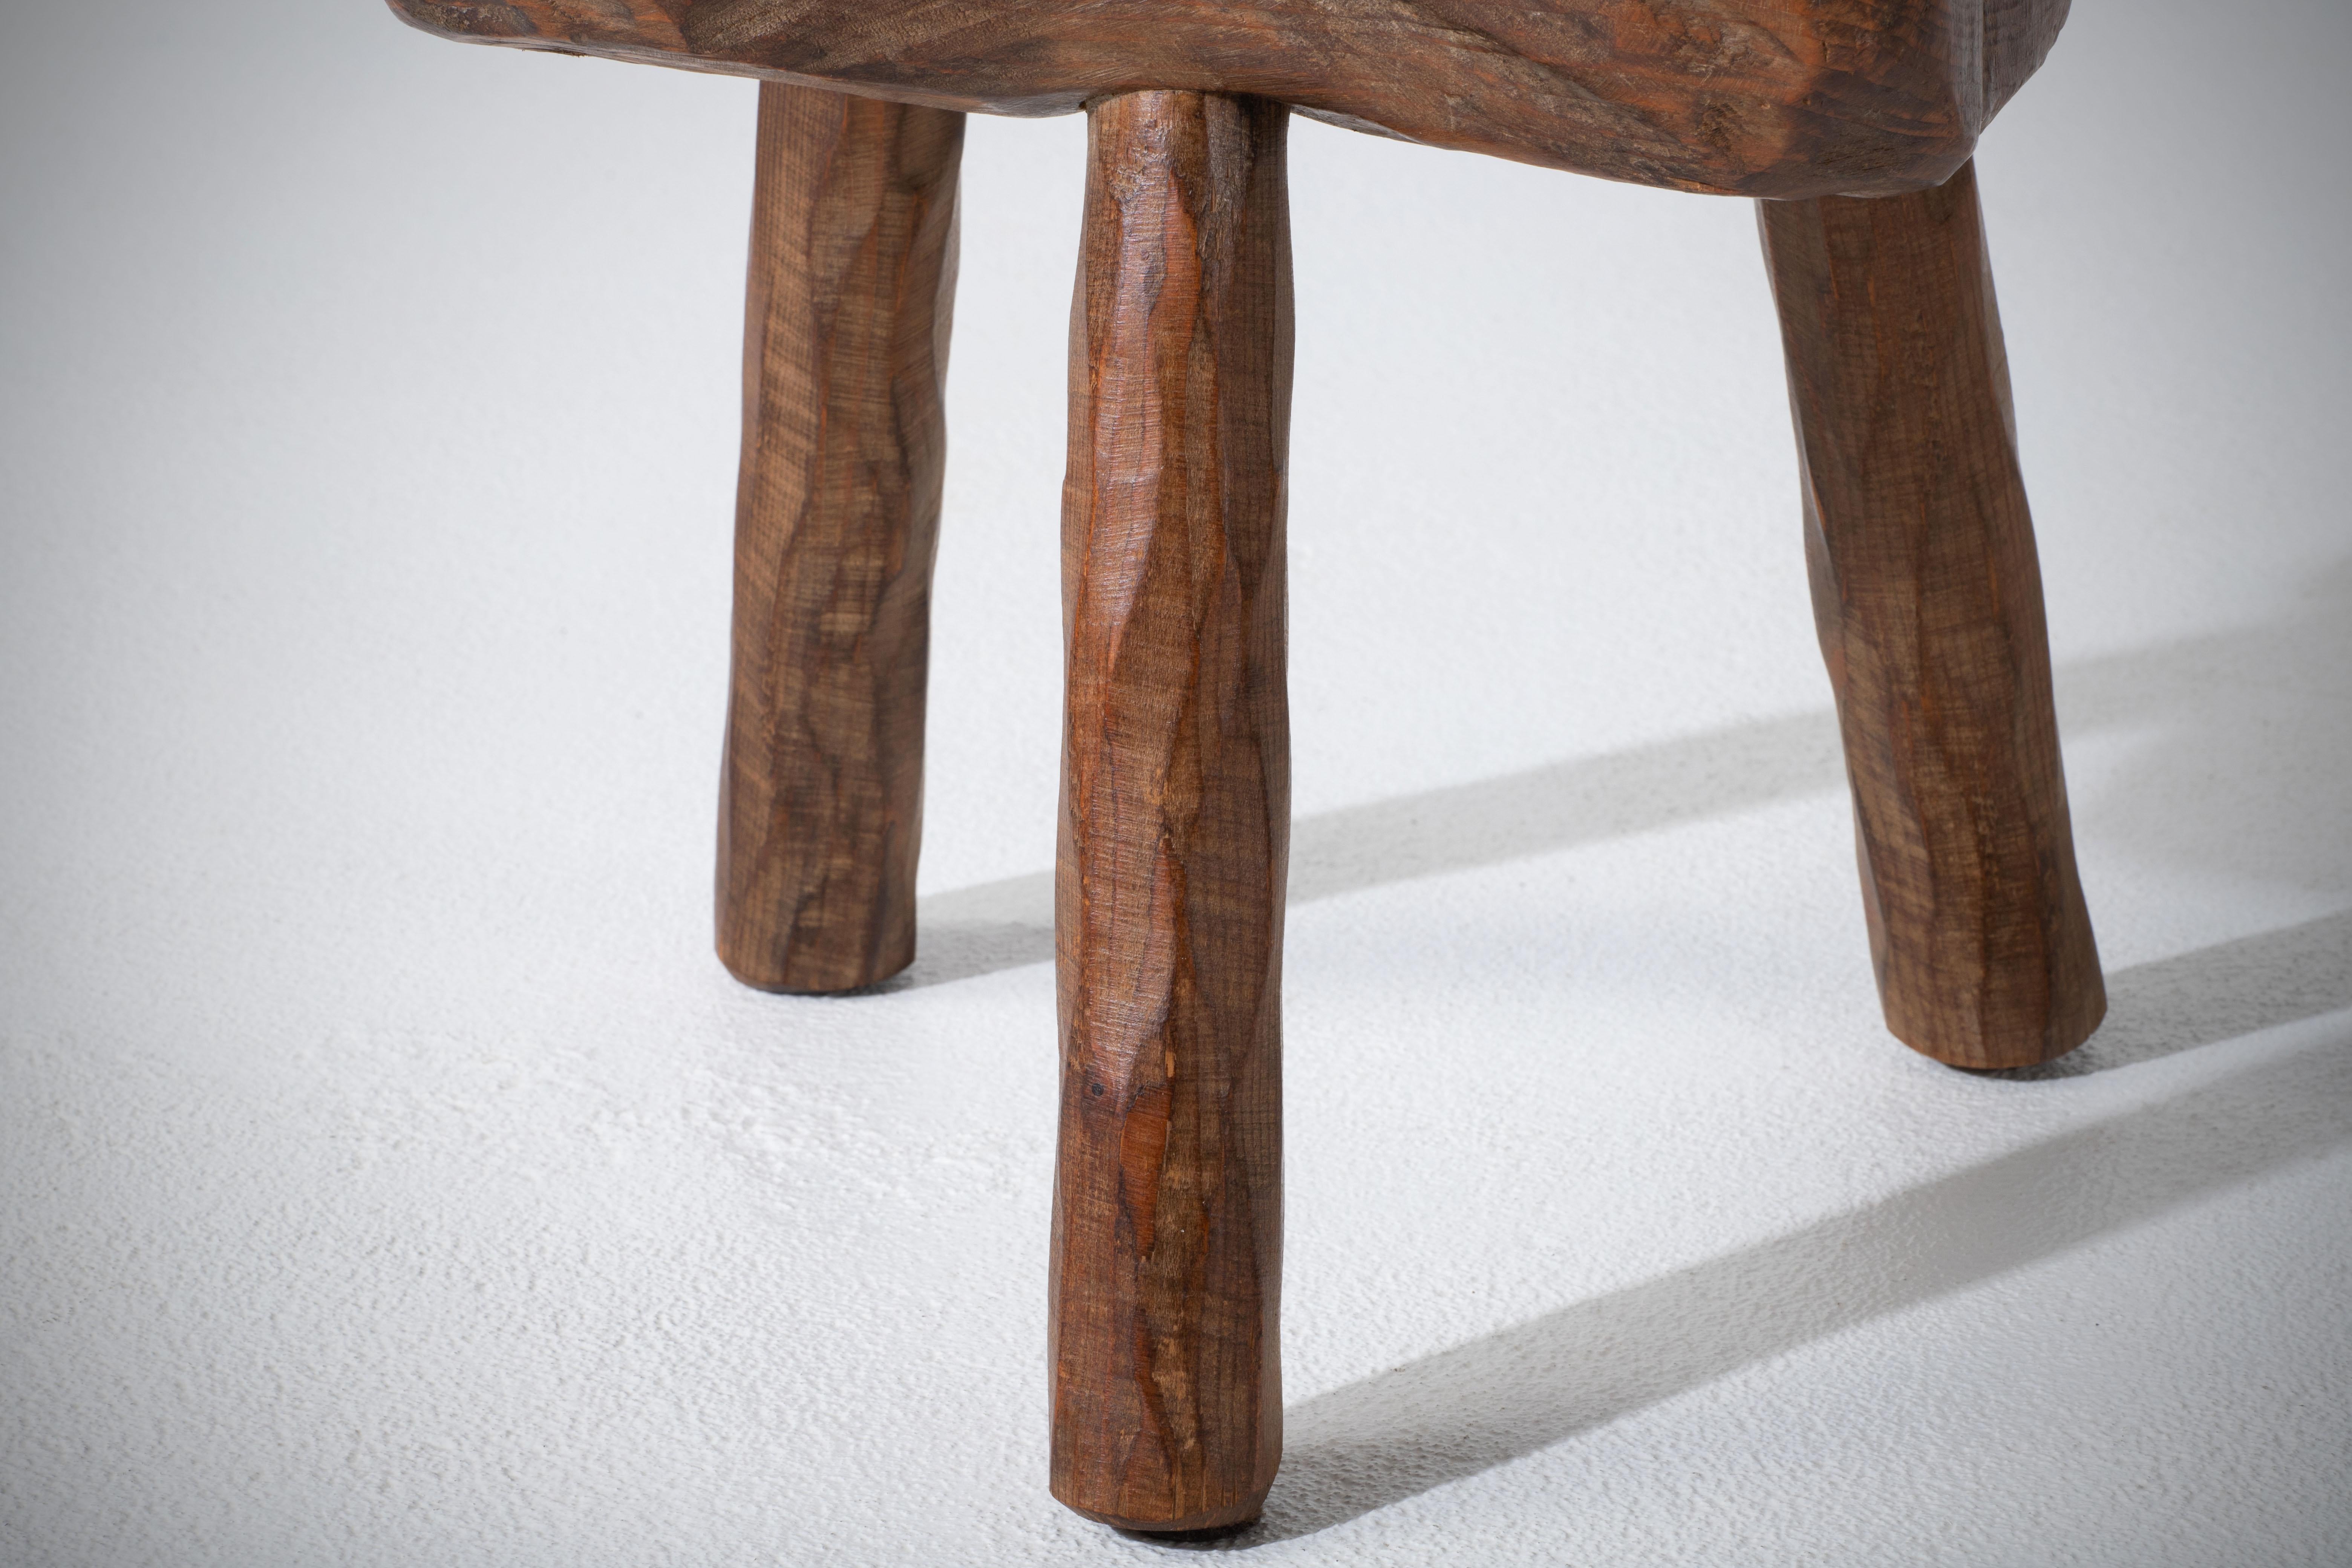 Fantastique tabouret en bois de France dans un style rustique. Olivetree, belle patine. Il a été fabriqué dans les années 1960.